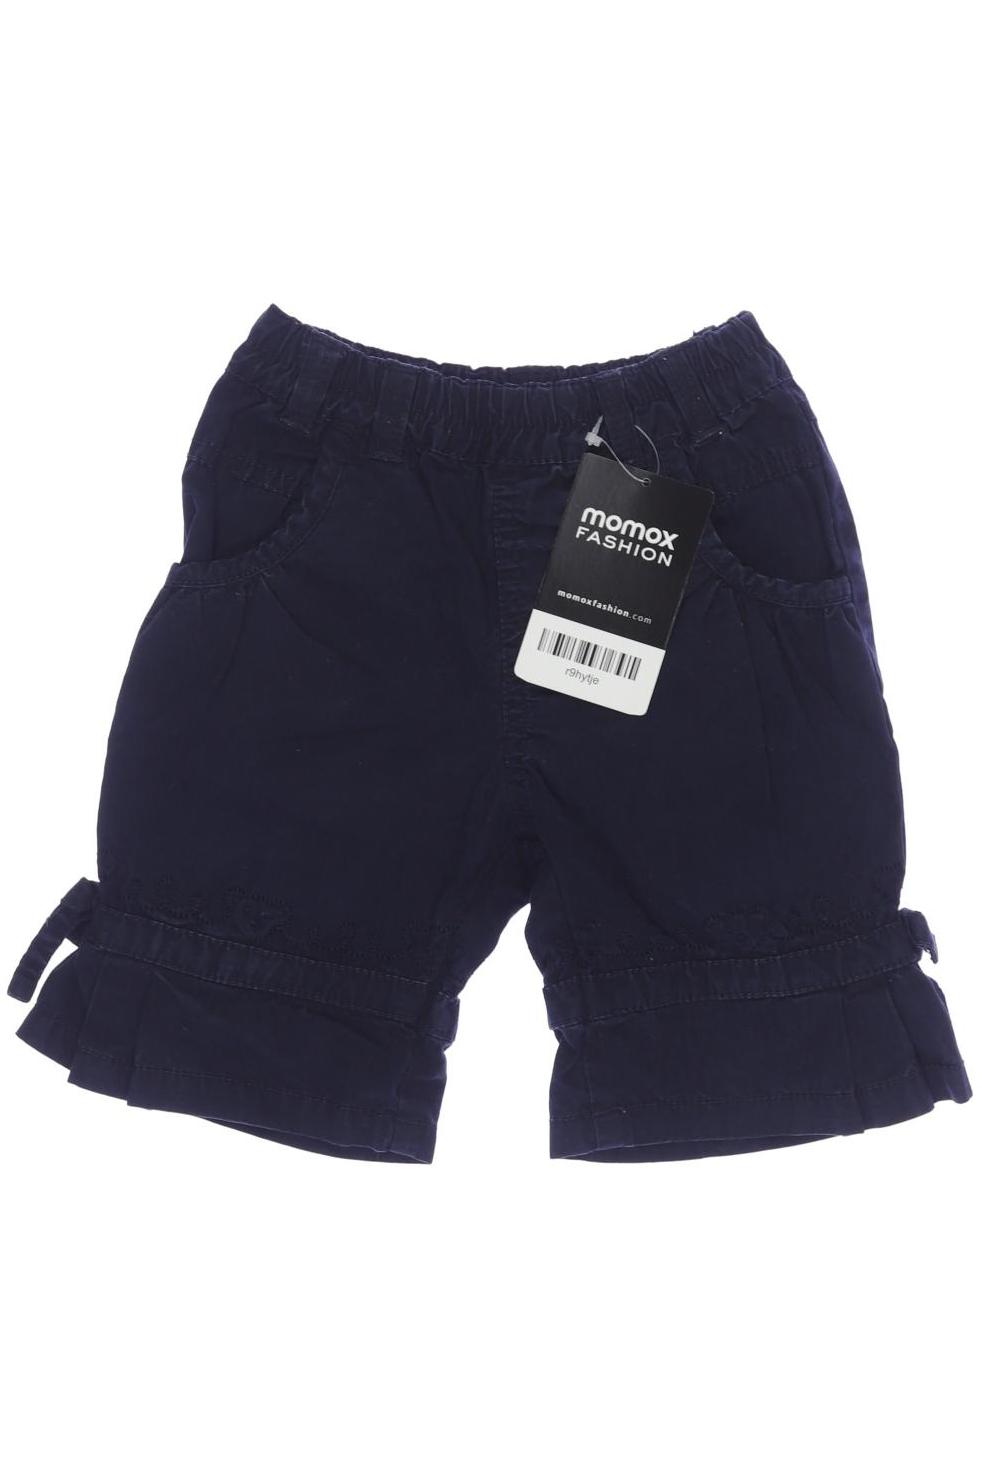 Steiff Damen Shorts, marineblau, Gr. 68 von Steiff